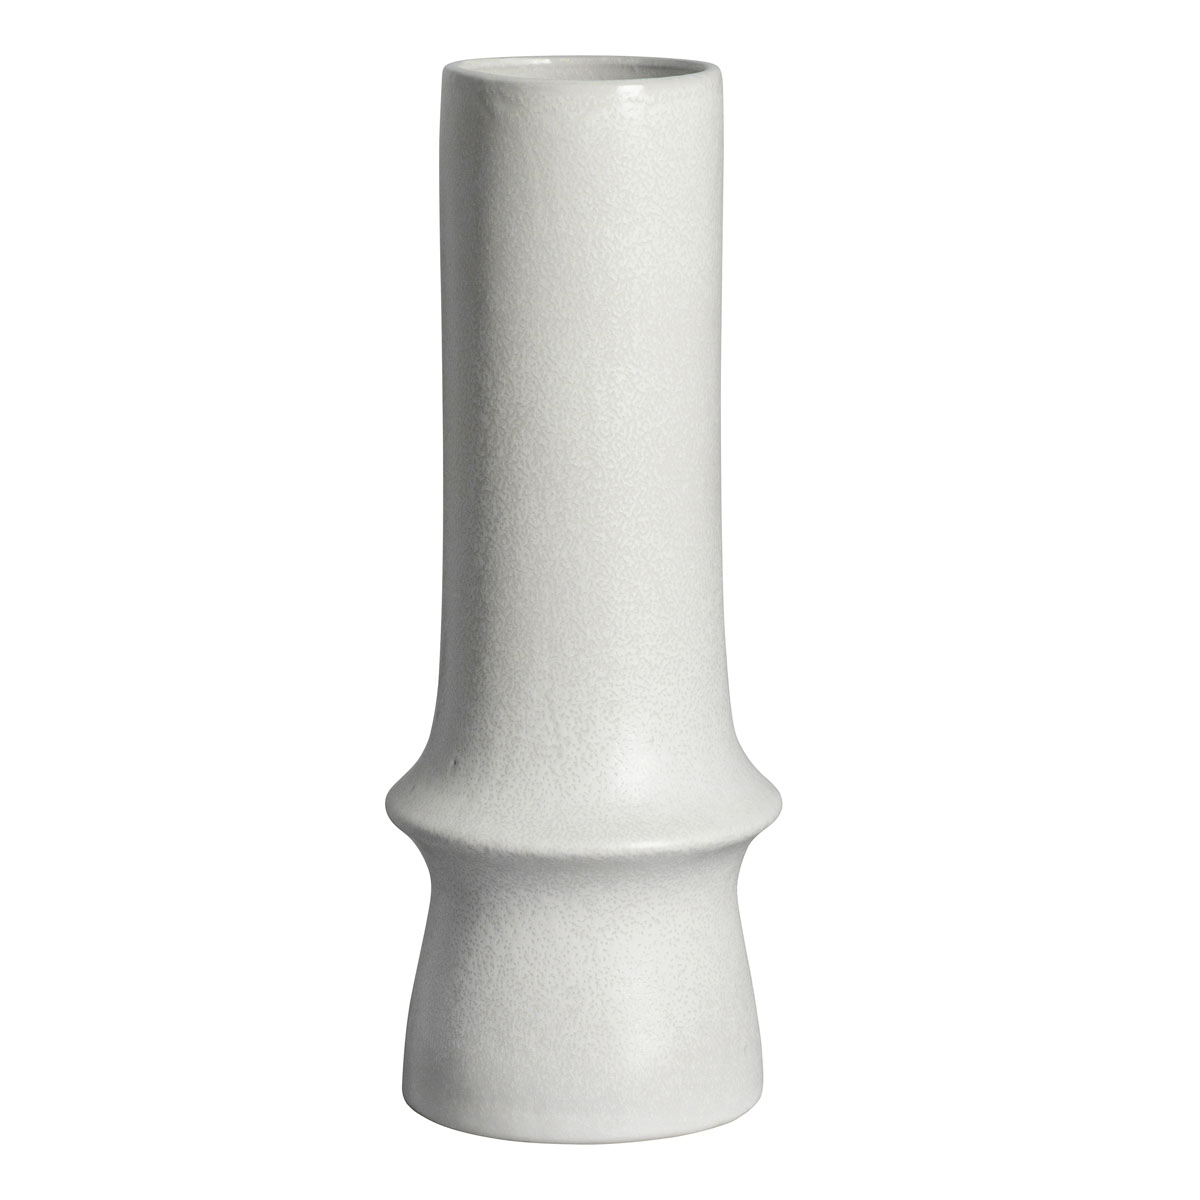 Nagano Vase White 170x170x440mm